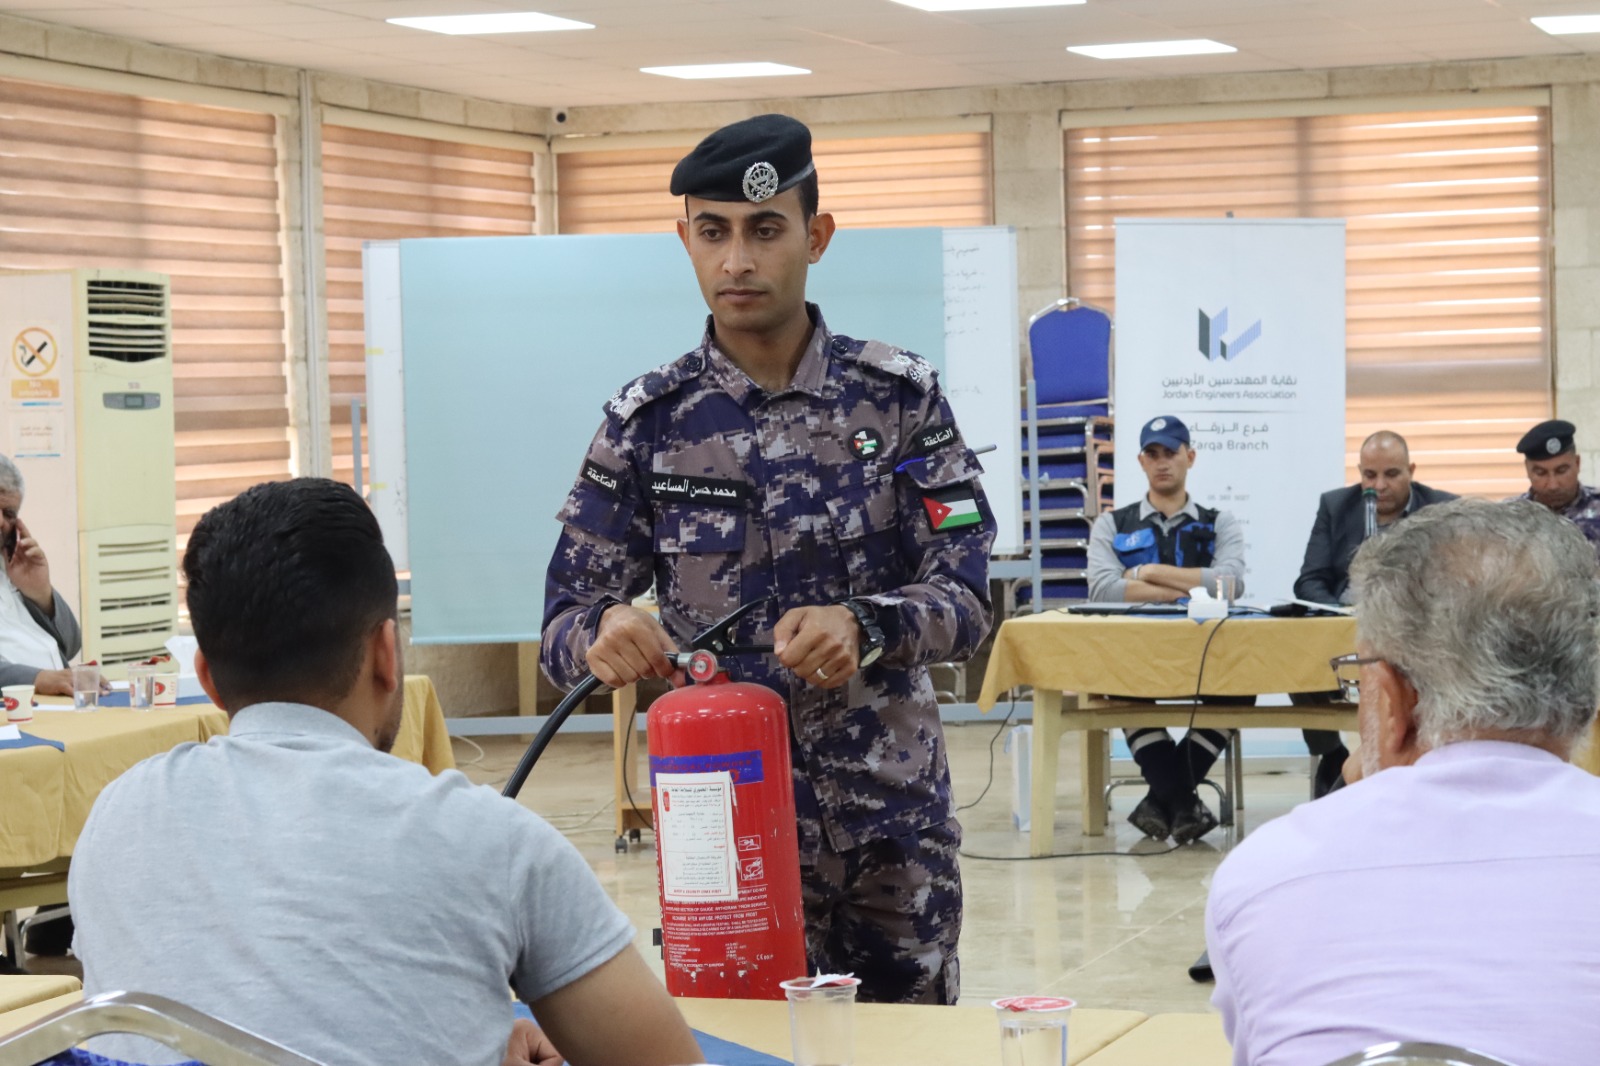 نقابة المهندسين الأردنيين/الزرقاء تنظم محاضرة توعوية عن الإسعافات الأولية والإطفاء بالتعاون مع الدفاع المدني